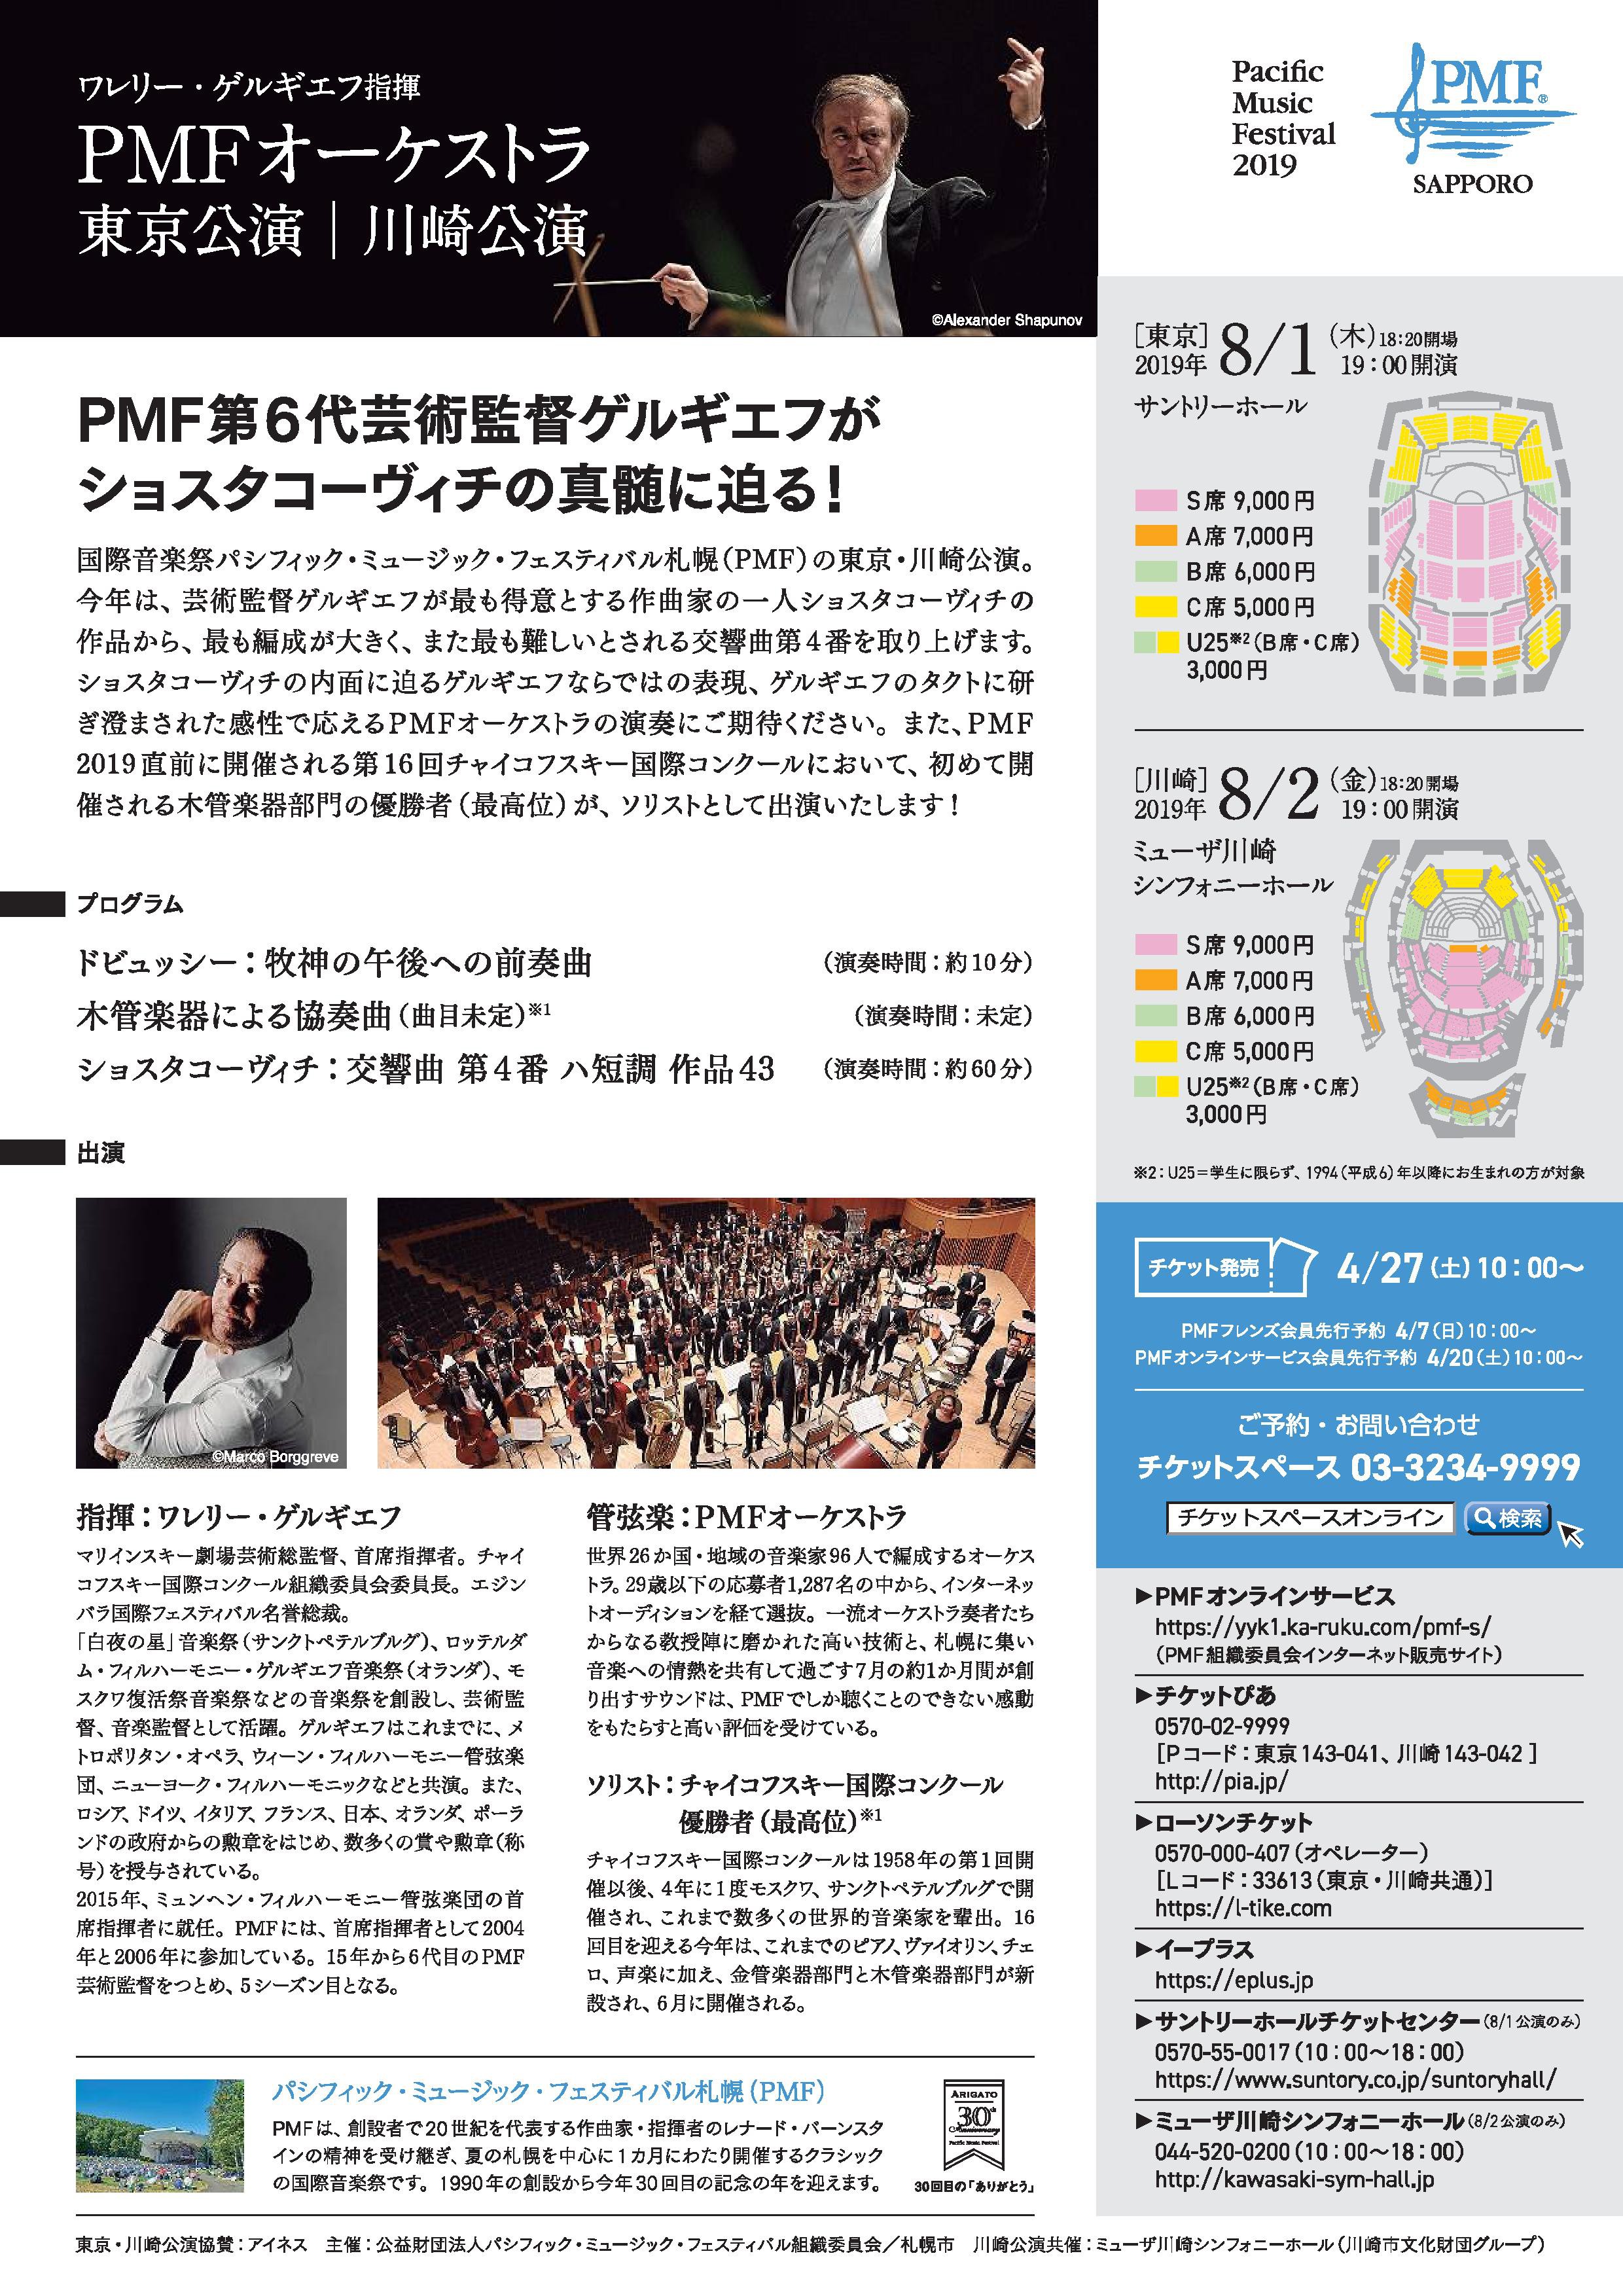 PMF Orchestra Concert in Tokyo & Kawasaki *Japanese (2)